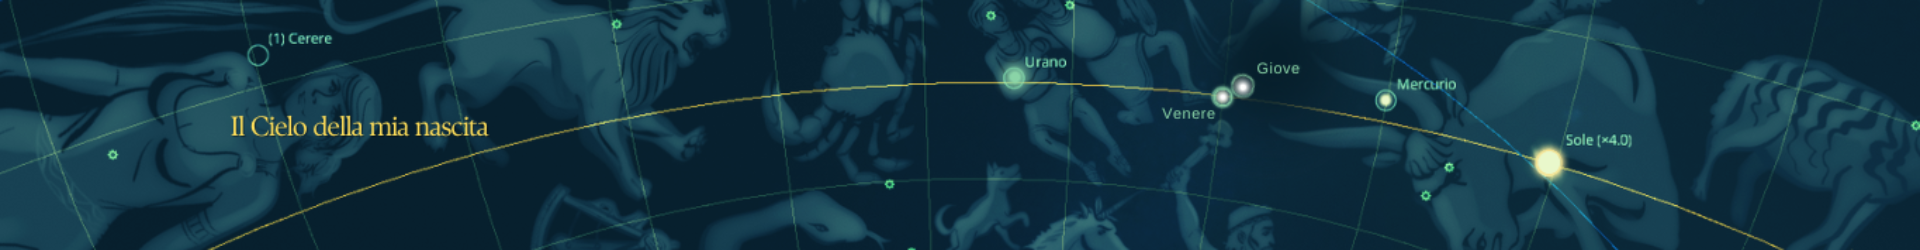 Simbologia astrologica dell’Ultima Cena di Leonardo da Vinci